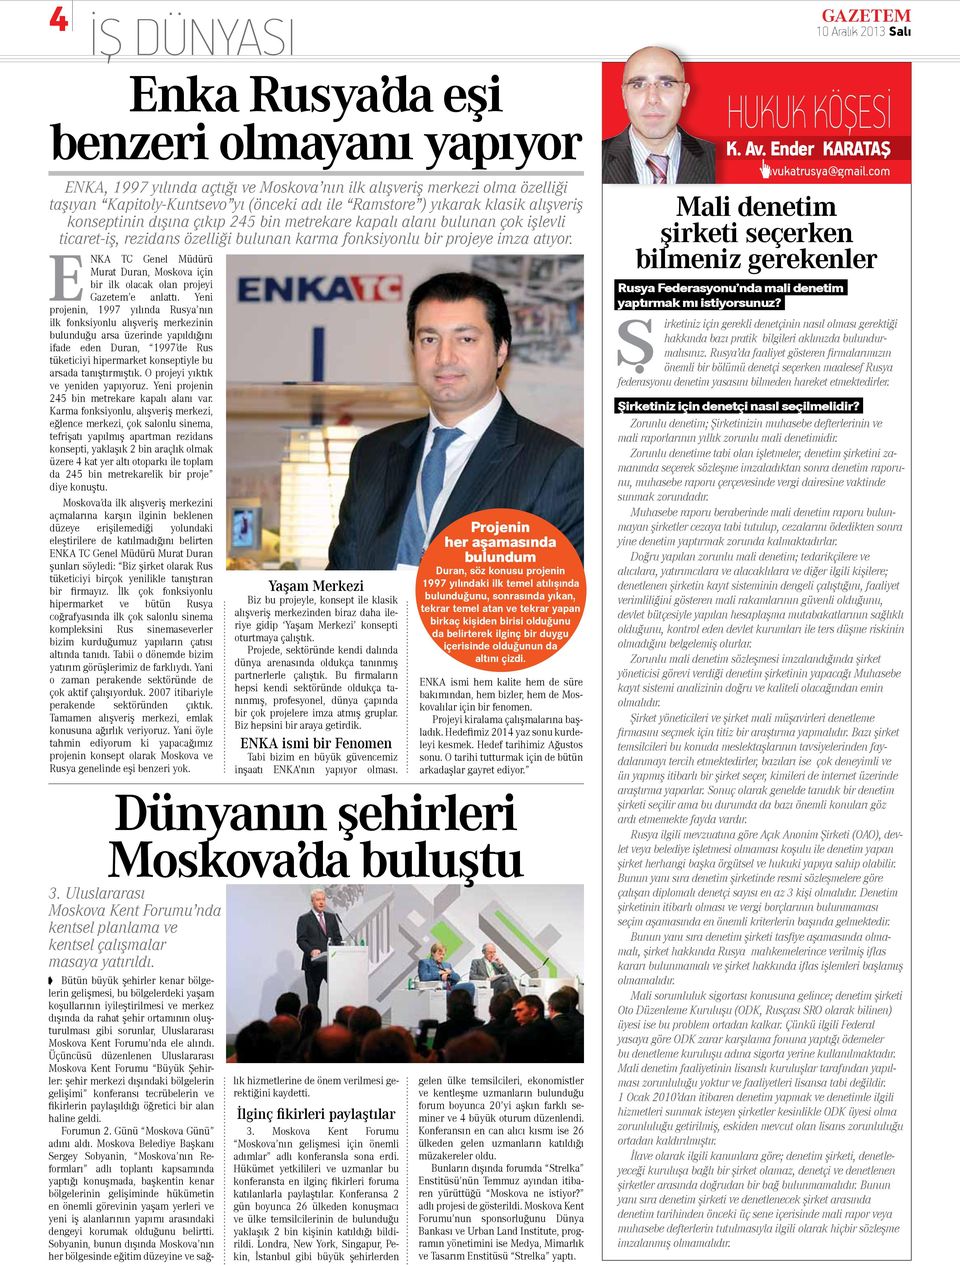 ENKA TC Genel Müdürü Murat Duran, Moskova için bir ilk olacak olan projeyi Gazetem e anlattı.